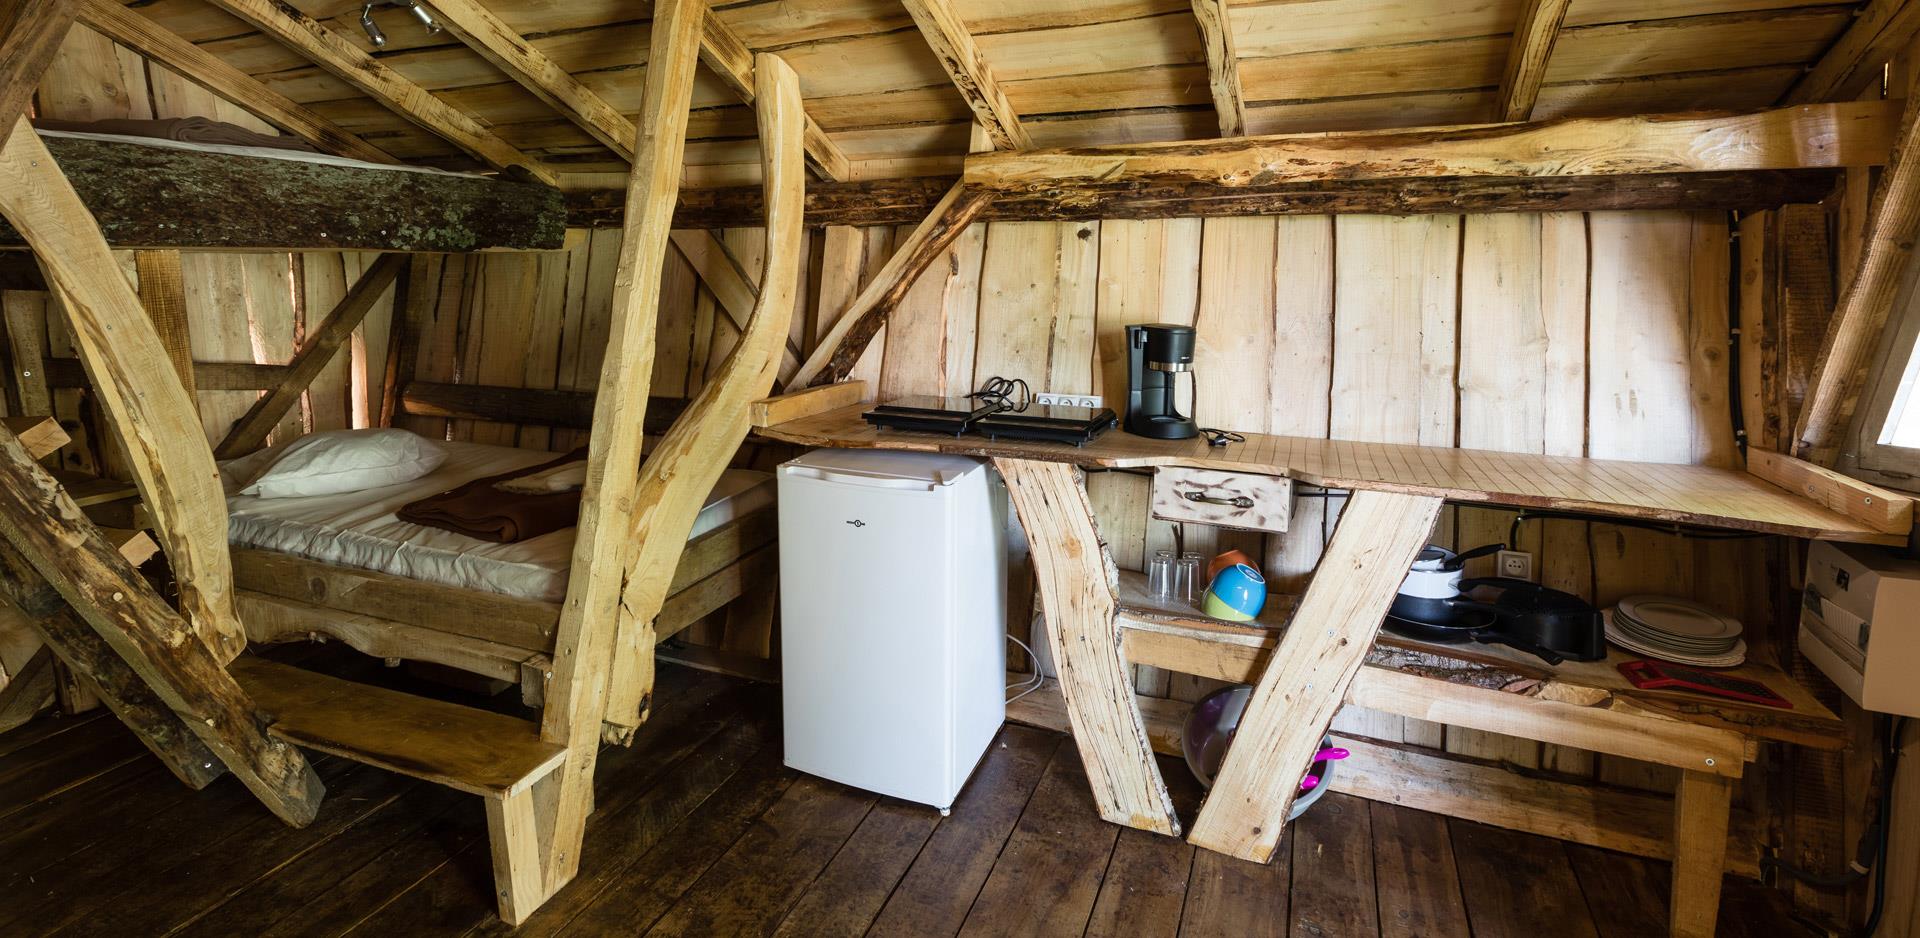 Location d'hébergements insolites en Alsace : vue d'un coin cuisine d'une cabane insolite